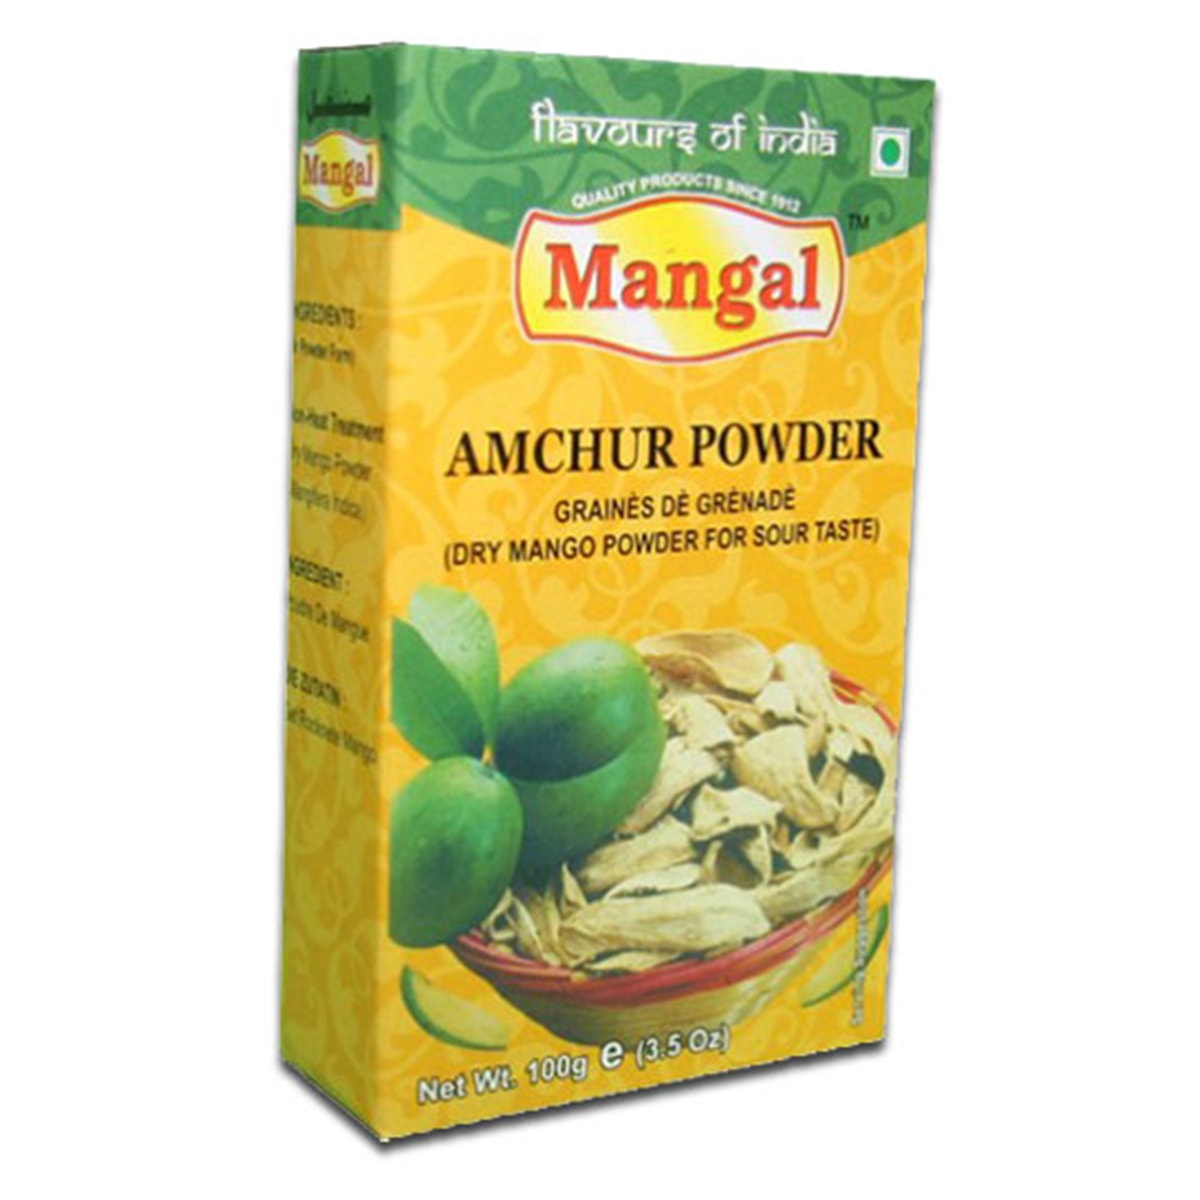 Buy Mangal Amchur Powder - 100 gm